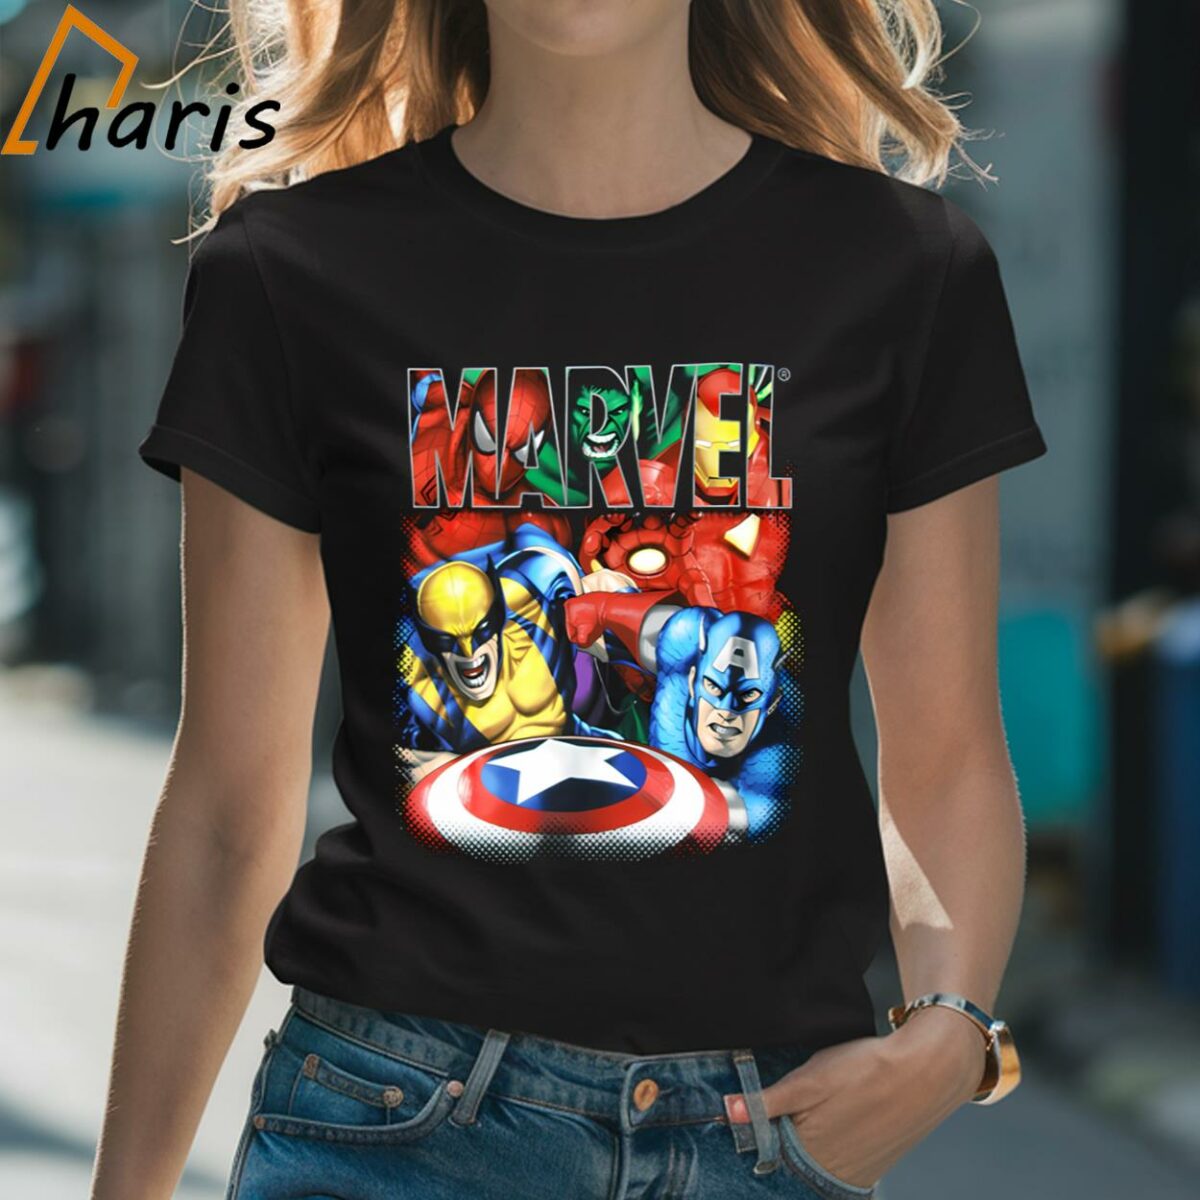 Marvel Movie Stars T shirt Best Gift For Fan 2 Shirt